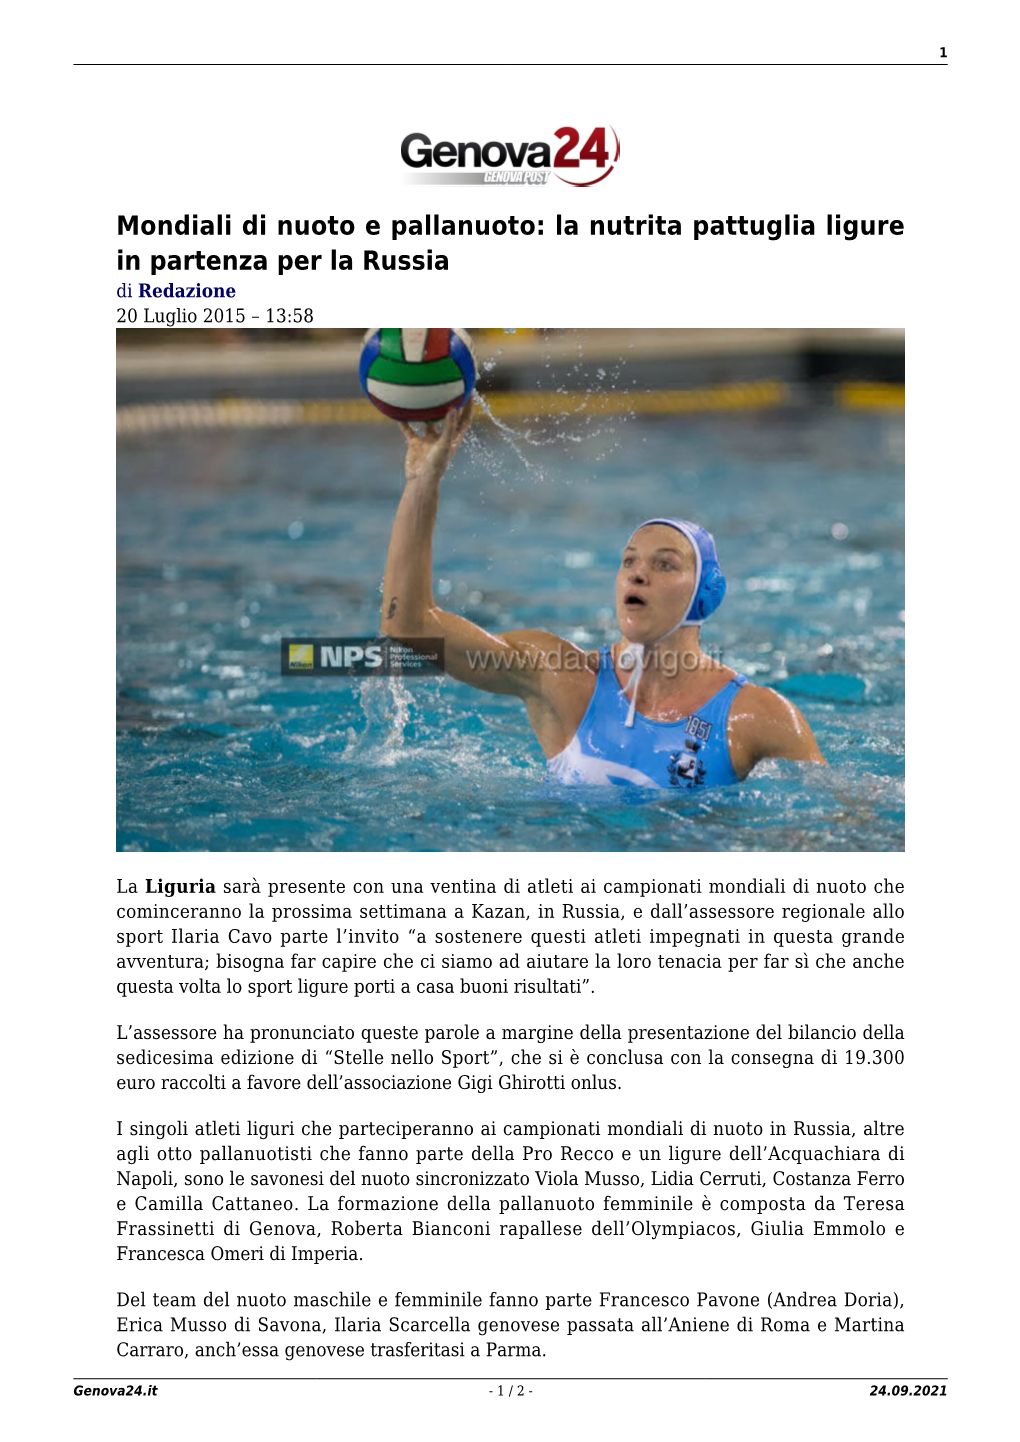 Mondiali Di Nuoto E Pallanuoto: La Nutrita Pattuglia Ligure in Partenza Per La Russia Di Redazione 20 Luglio 2015 – 13:58